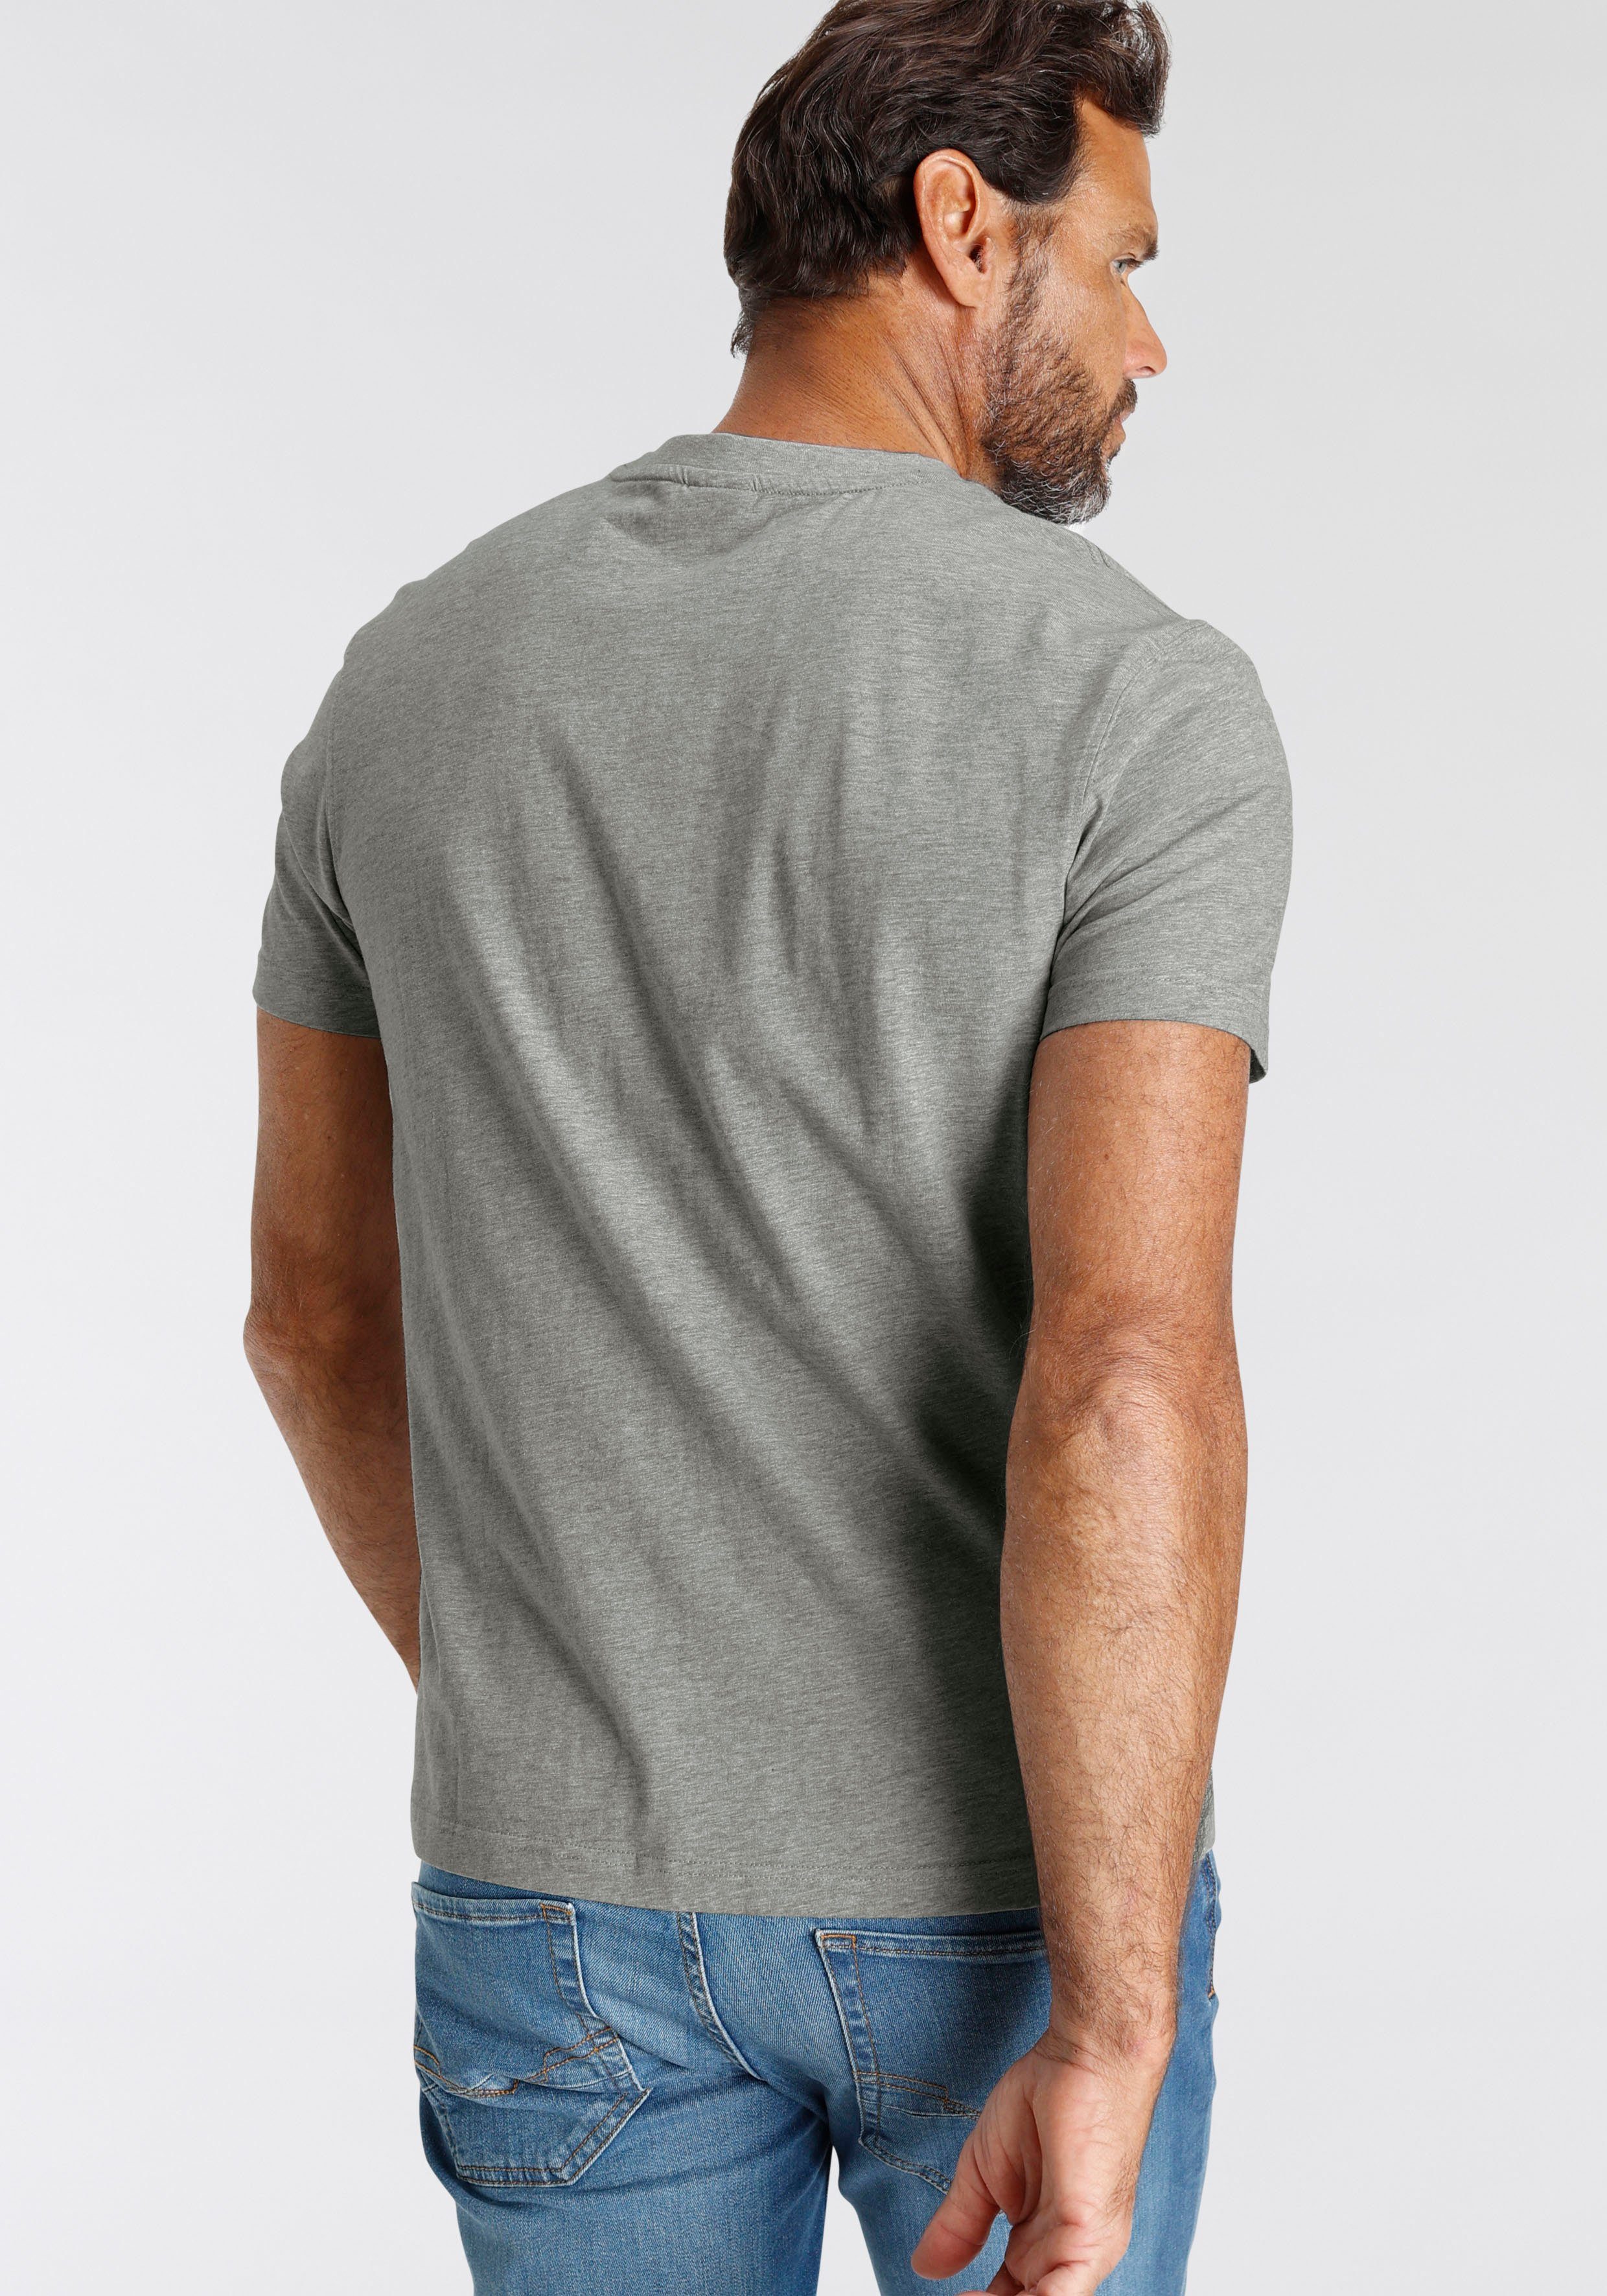 vorne Logo-Print T-Shirt mit grau H.I.S meliert